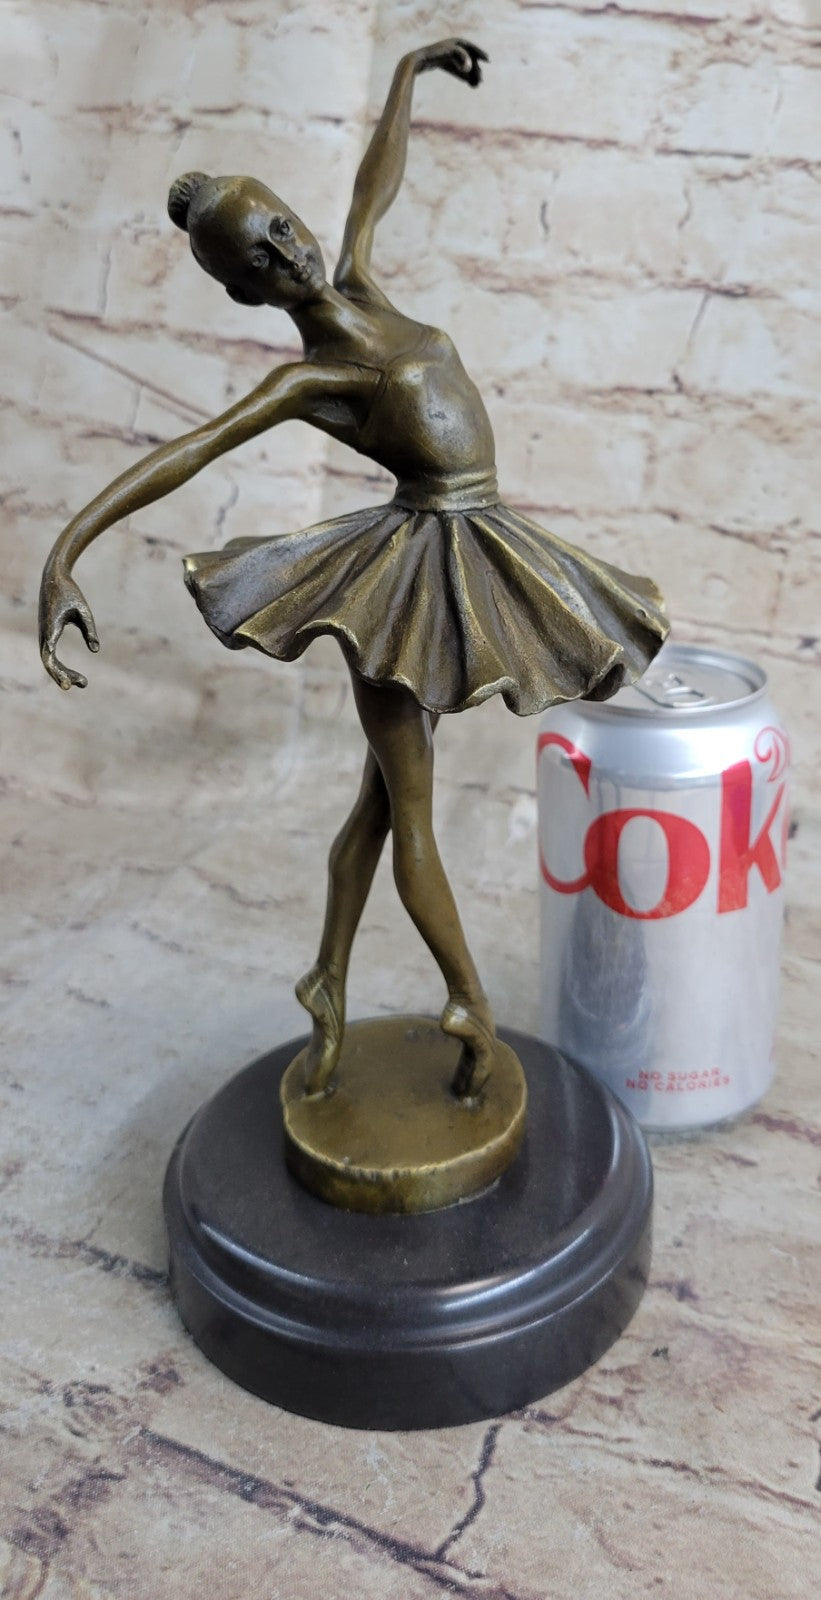 Handcrafted bronze sculpture SALE Marble Deco Nouveau Art Ballerina Prima